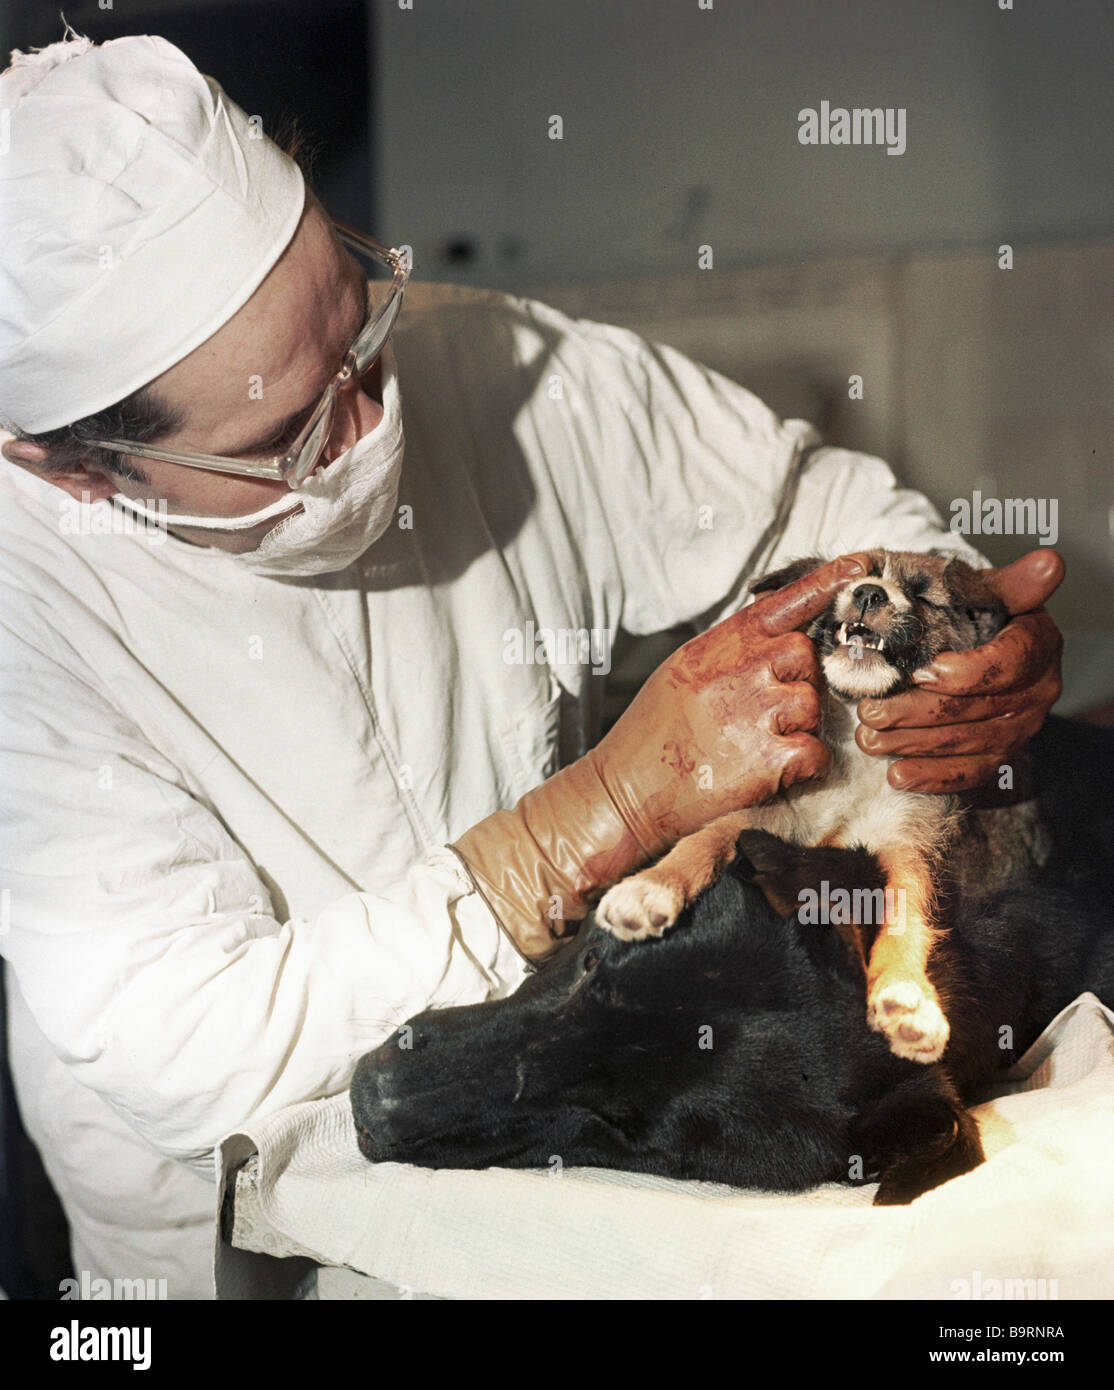 Professor Vladimir Demikhov einen Hund nach Transplantationschirurgie  untersuchen Stockfotografie - Alamy